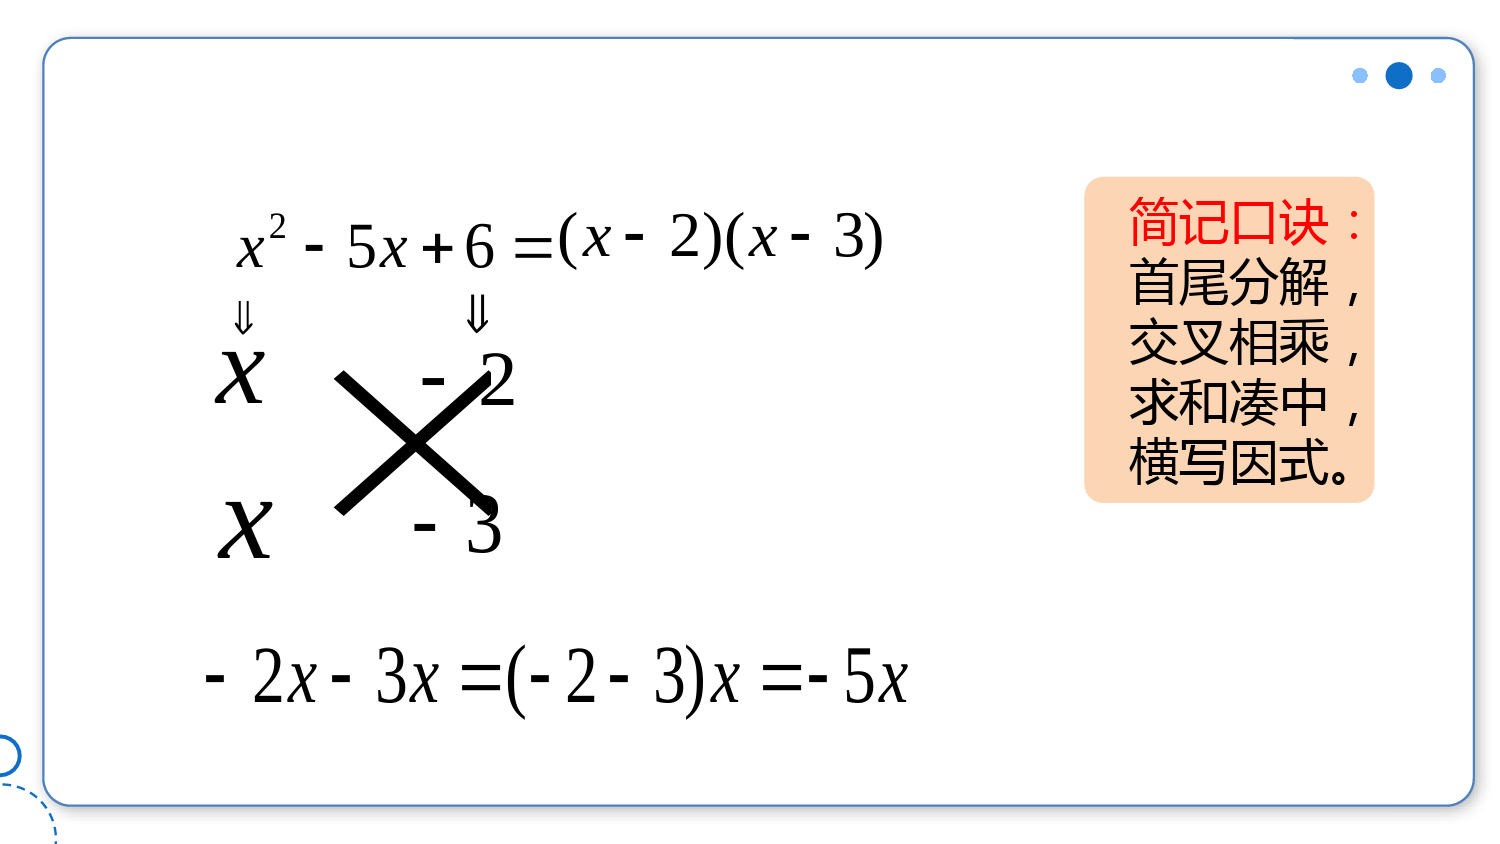 人教版九年级上册数学第21章因式分解法-十字相乘法